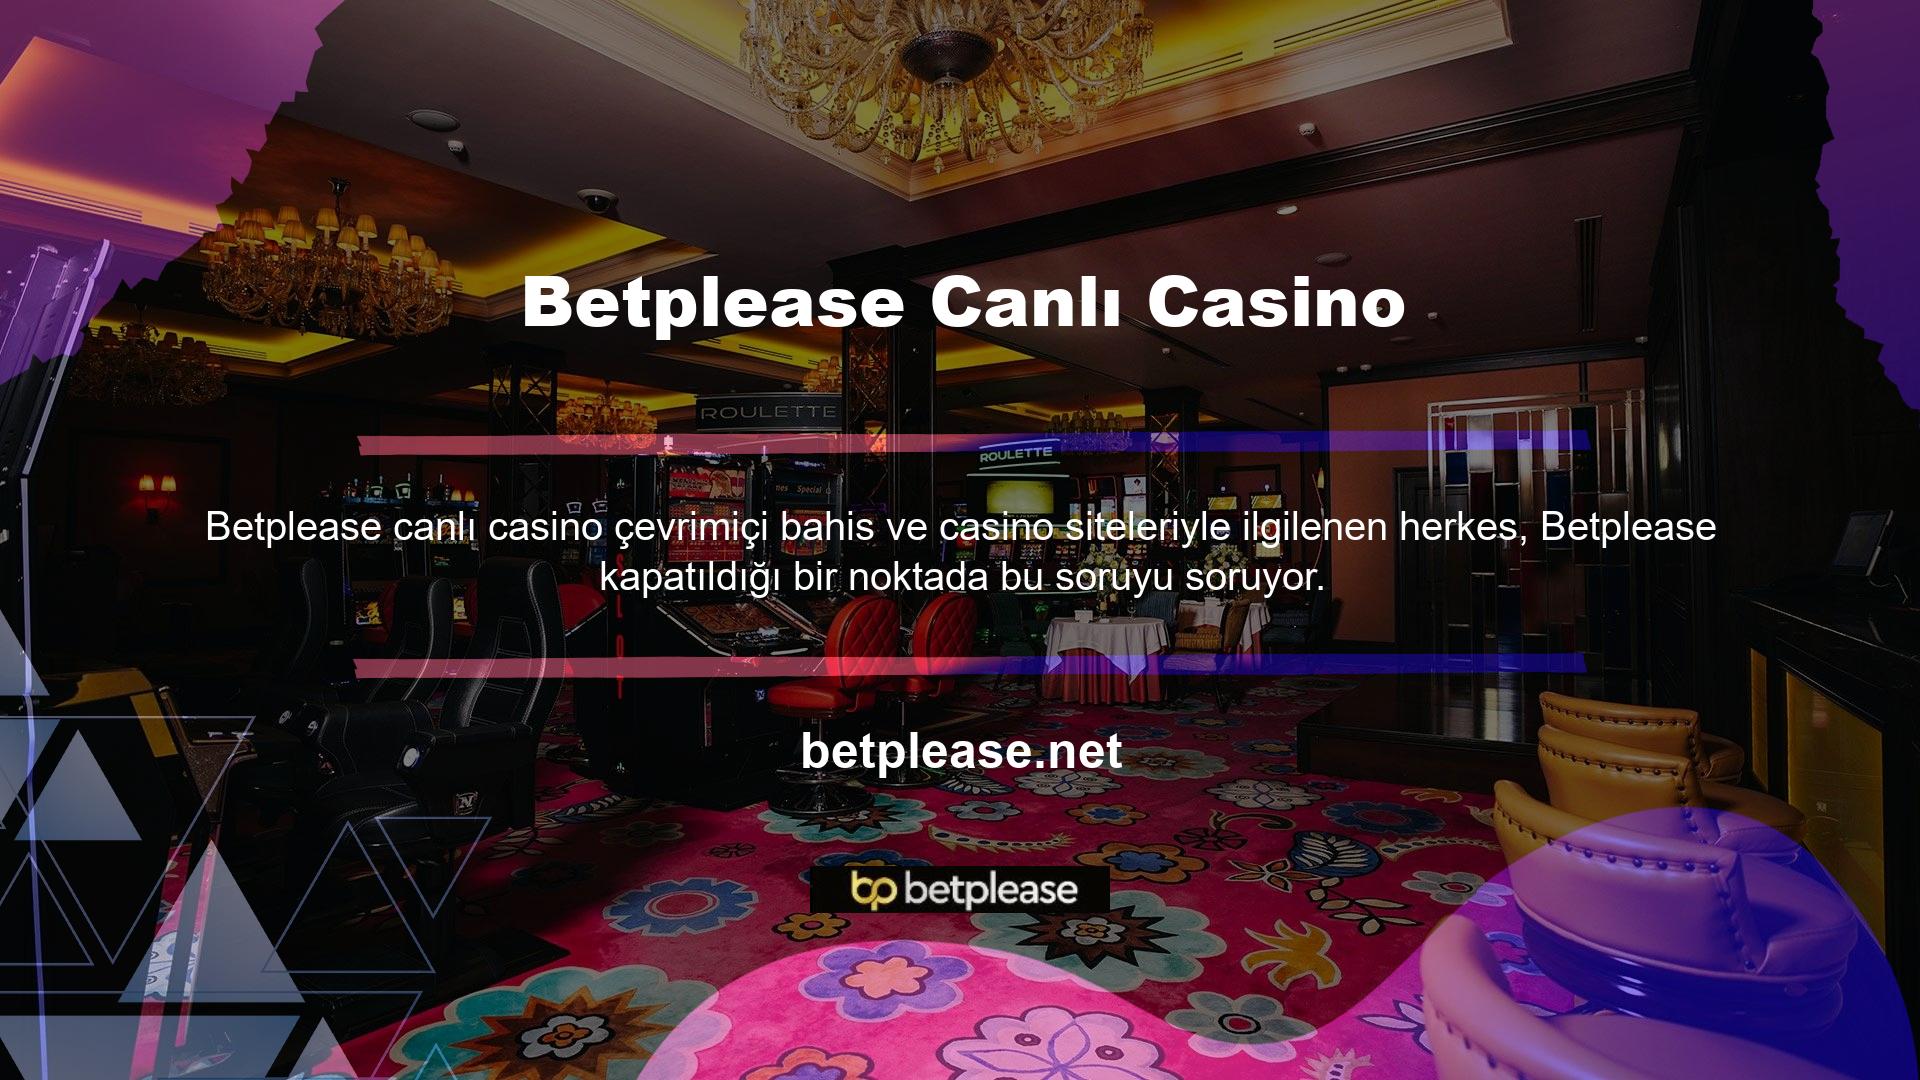 Sitemizde canlı casino oyunları oynamak mümkün olup, en iyisini oynayarak para kazanabilirsiniz